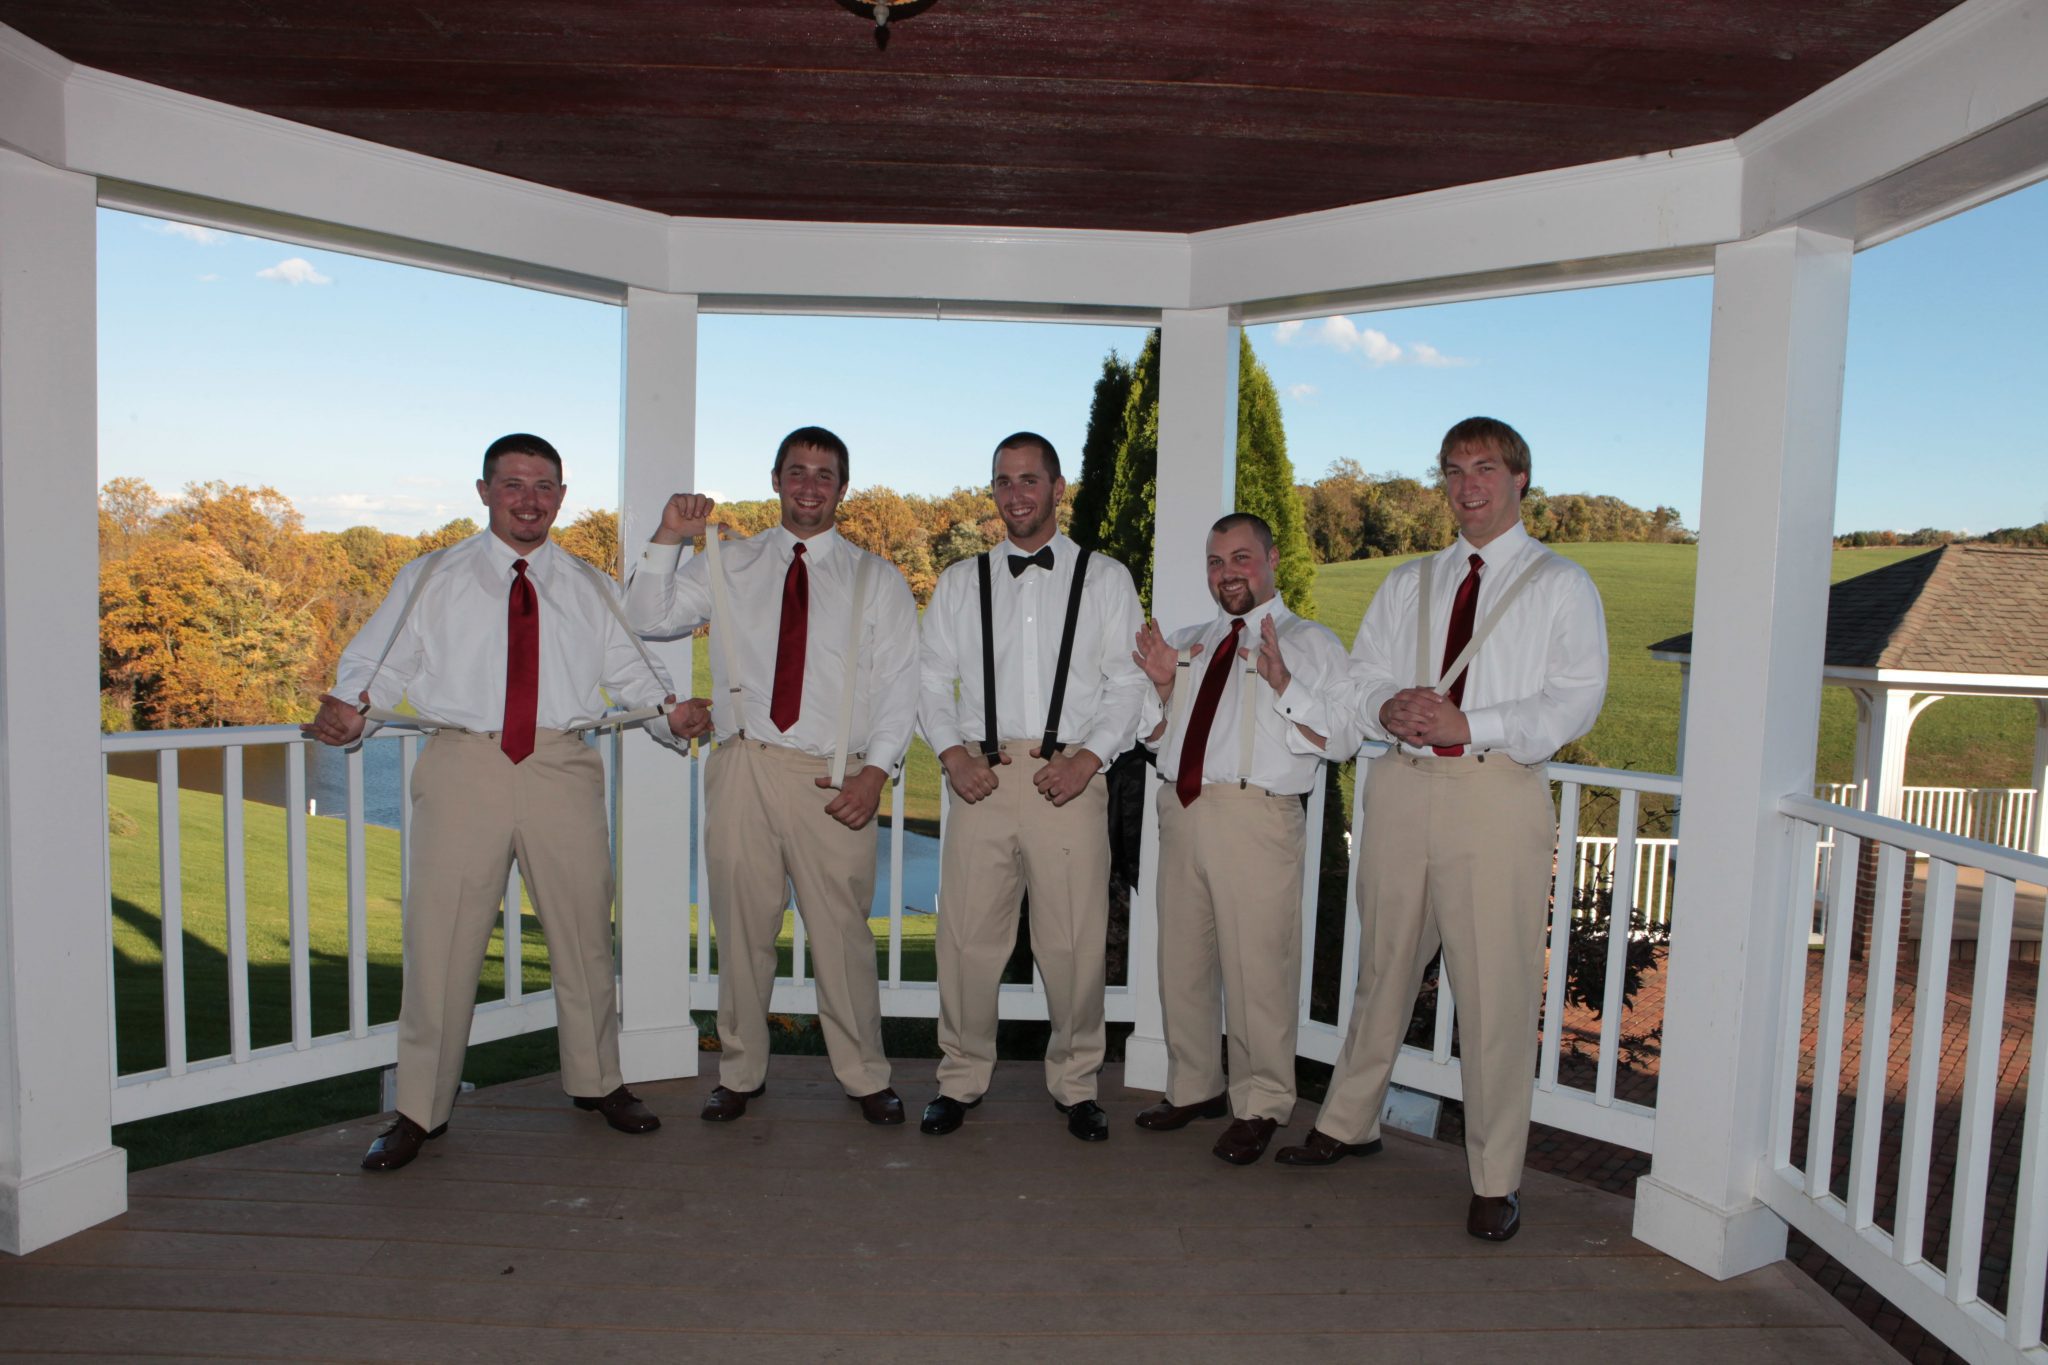 Groomsmen pose on the gazebo at Morningside Inn wedding venue in Maryland